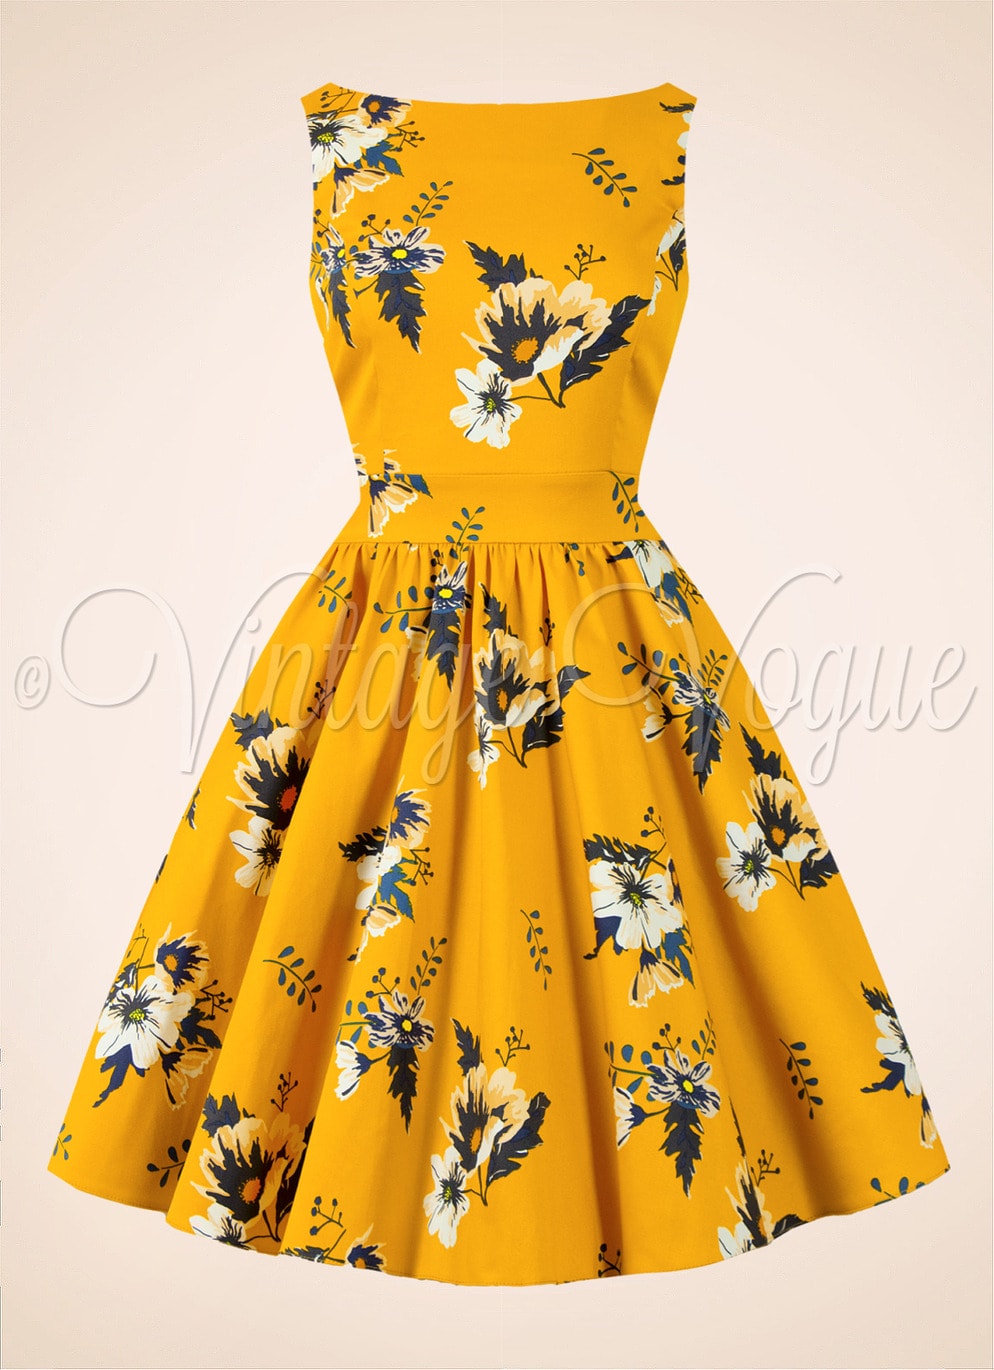 Lady Vintage 50's Retro Swing Petticoat Kleid Honey Tea Dress in Senfgelb Gelb 50er Jahre Petticoat Damenkleid Blumen Rosen Geblümt Hochzeitsgast Sommerkleid